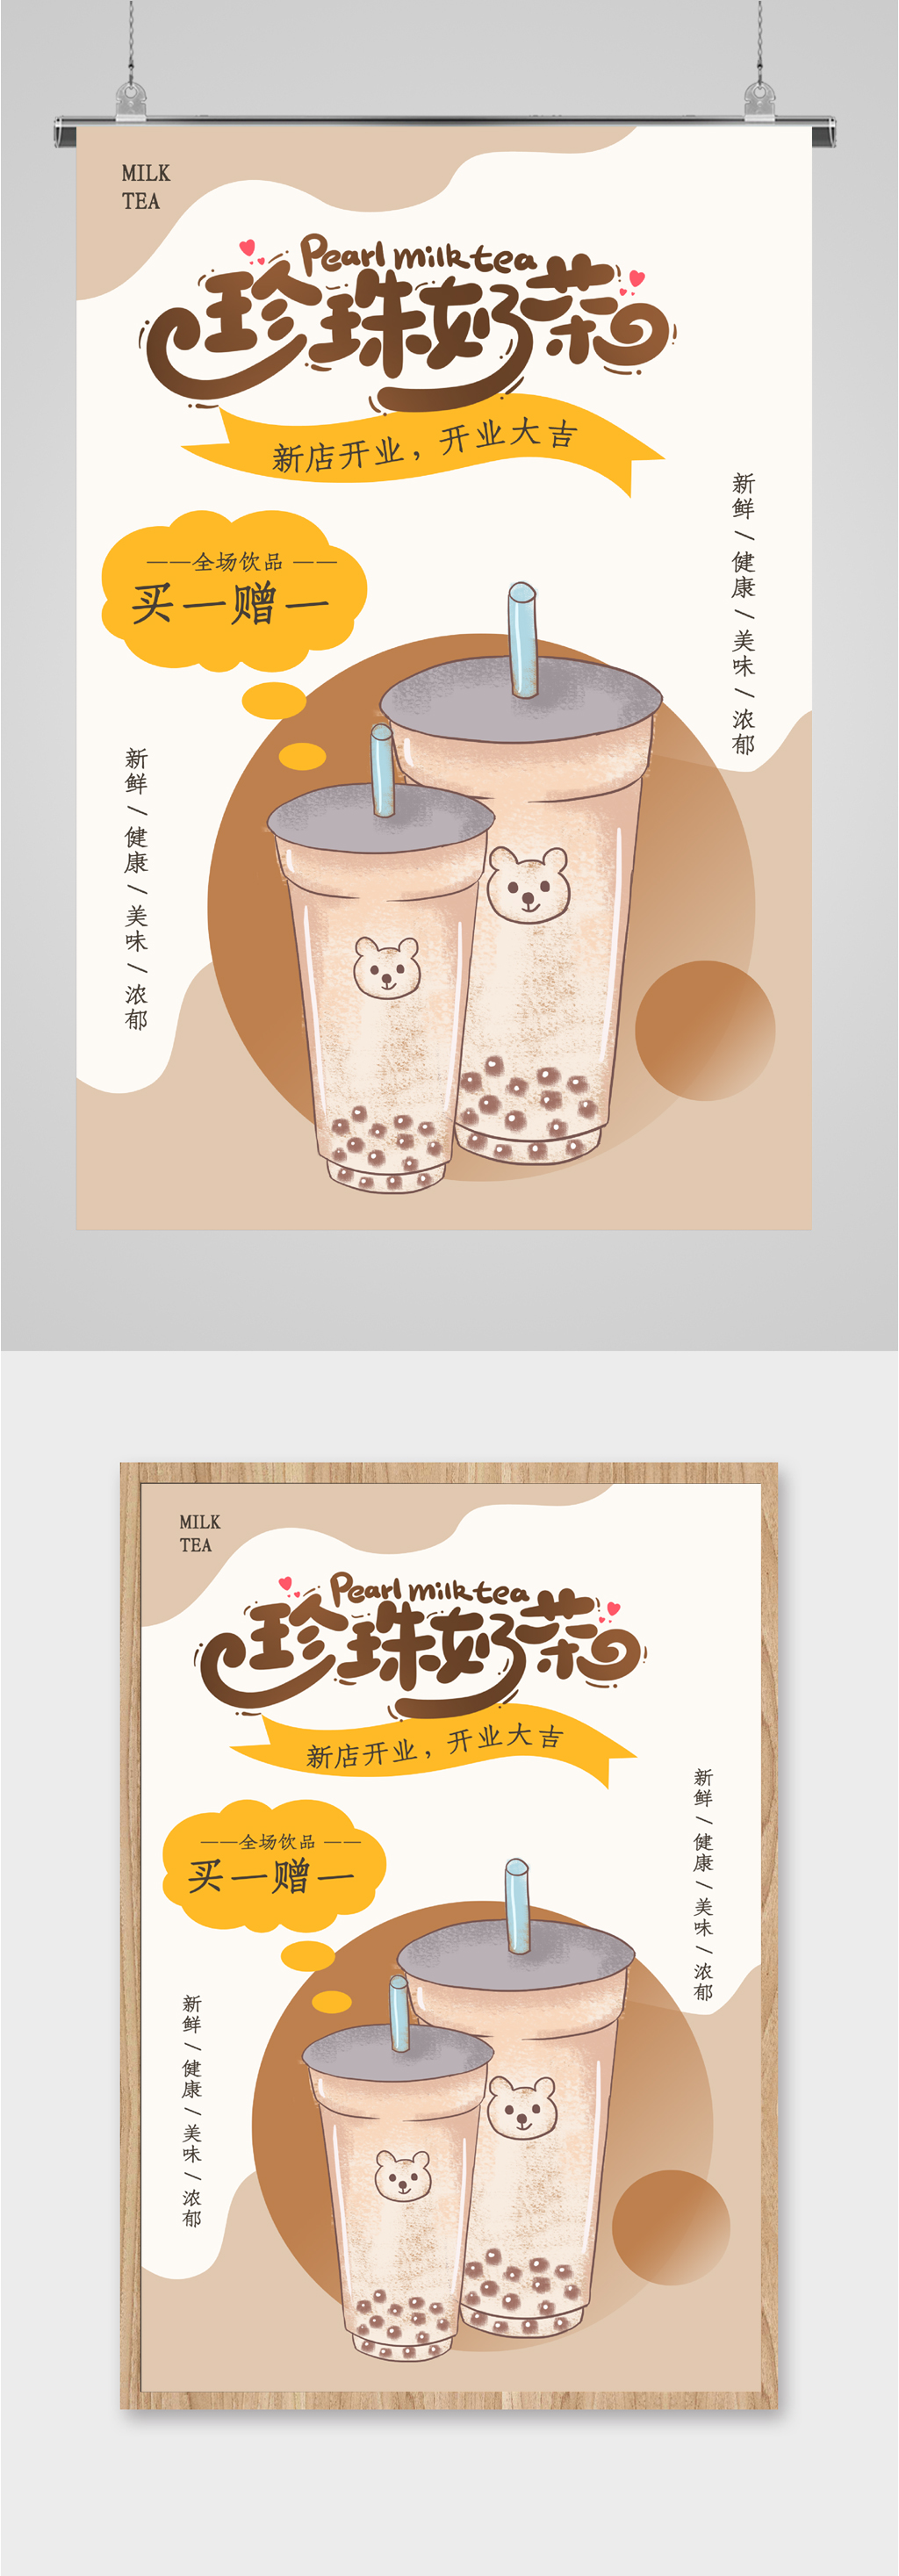 奶茶海报图片 简单图片